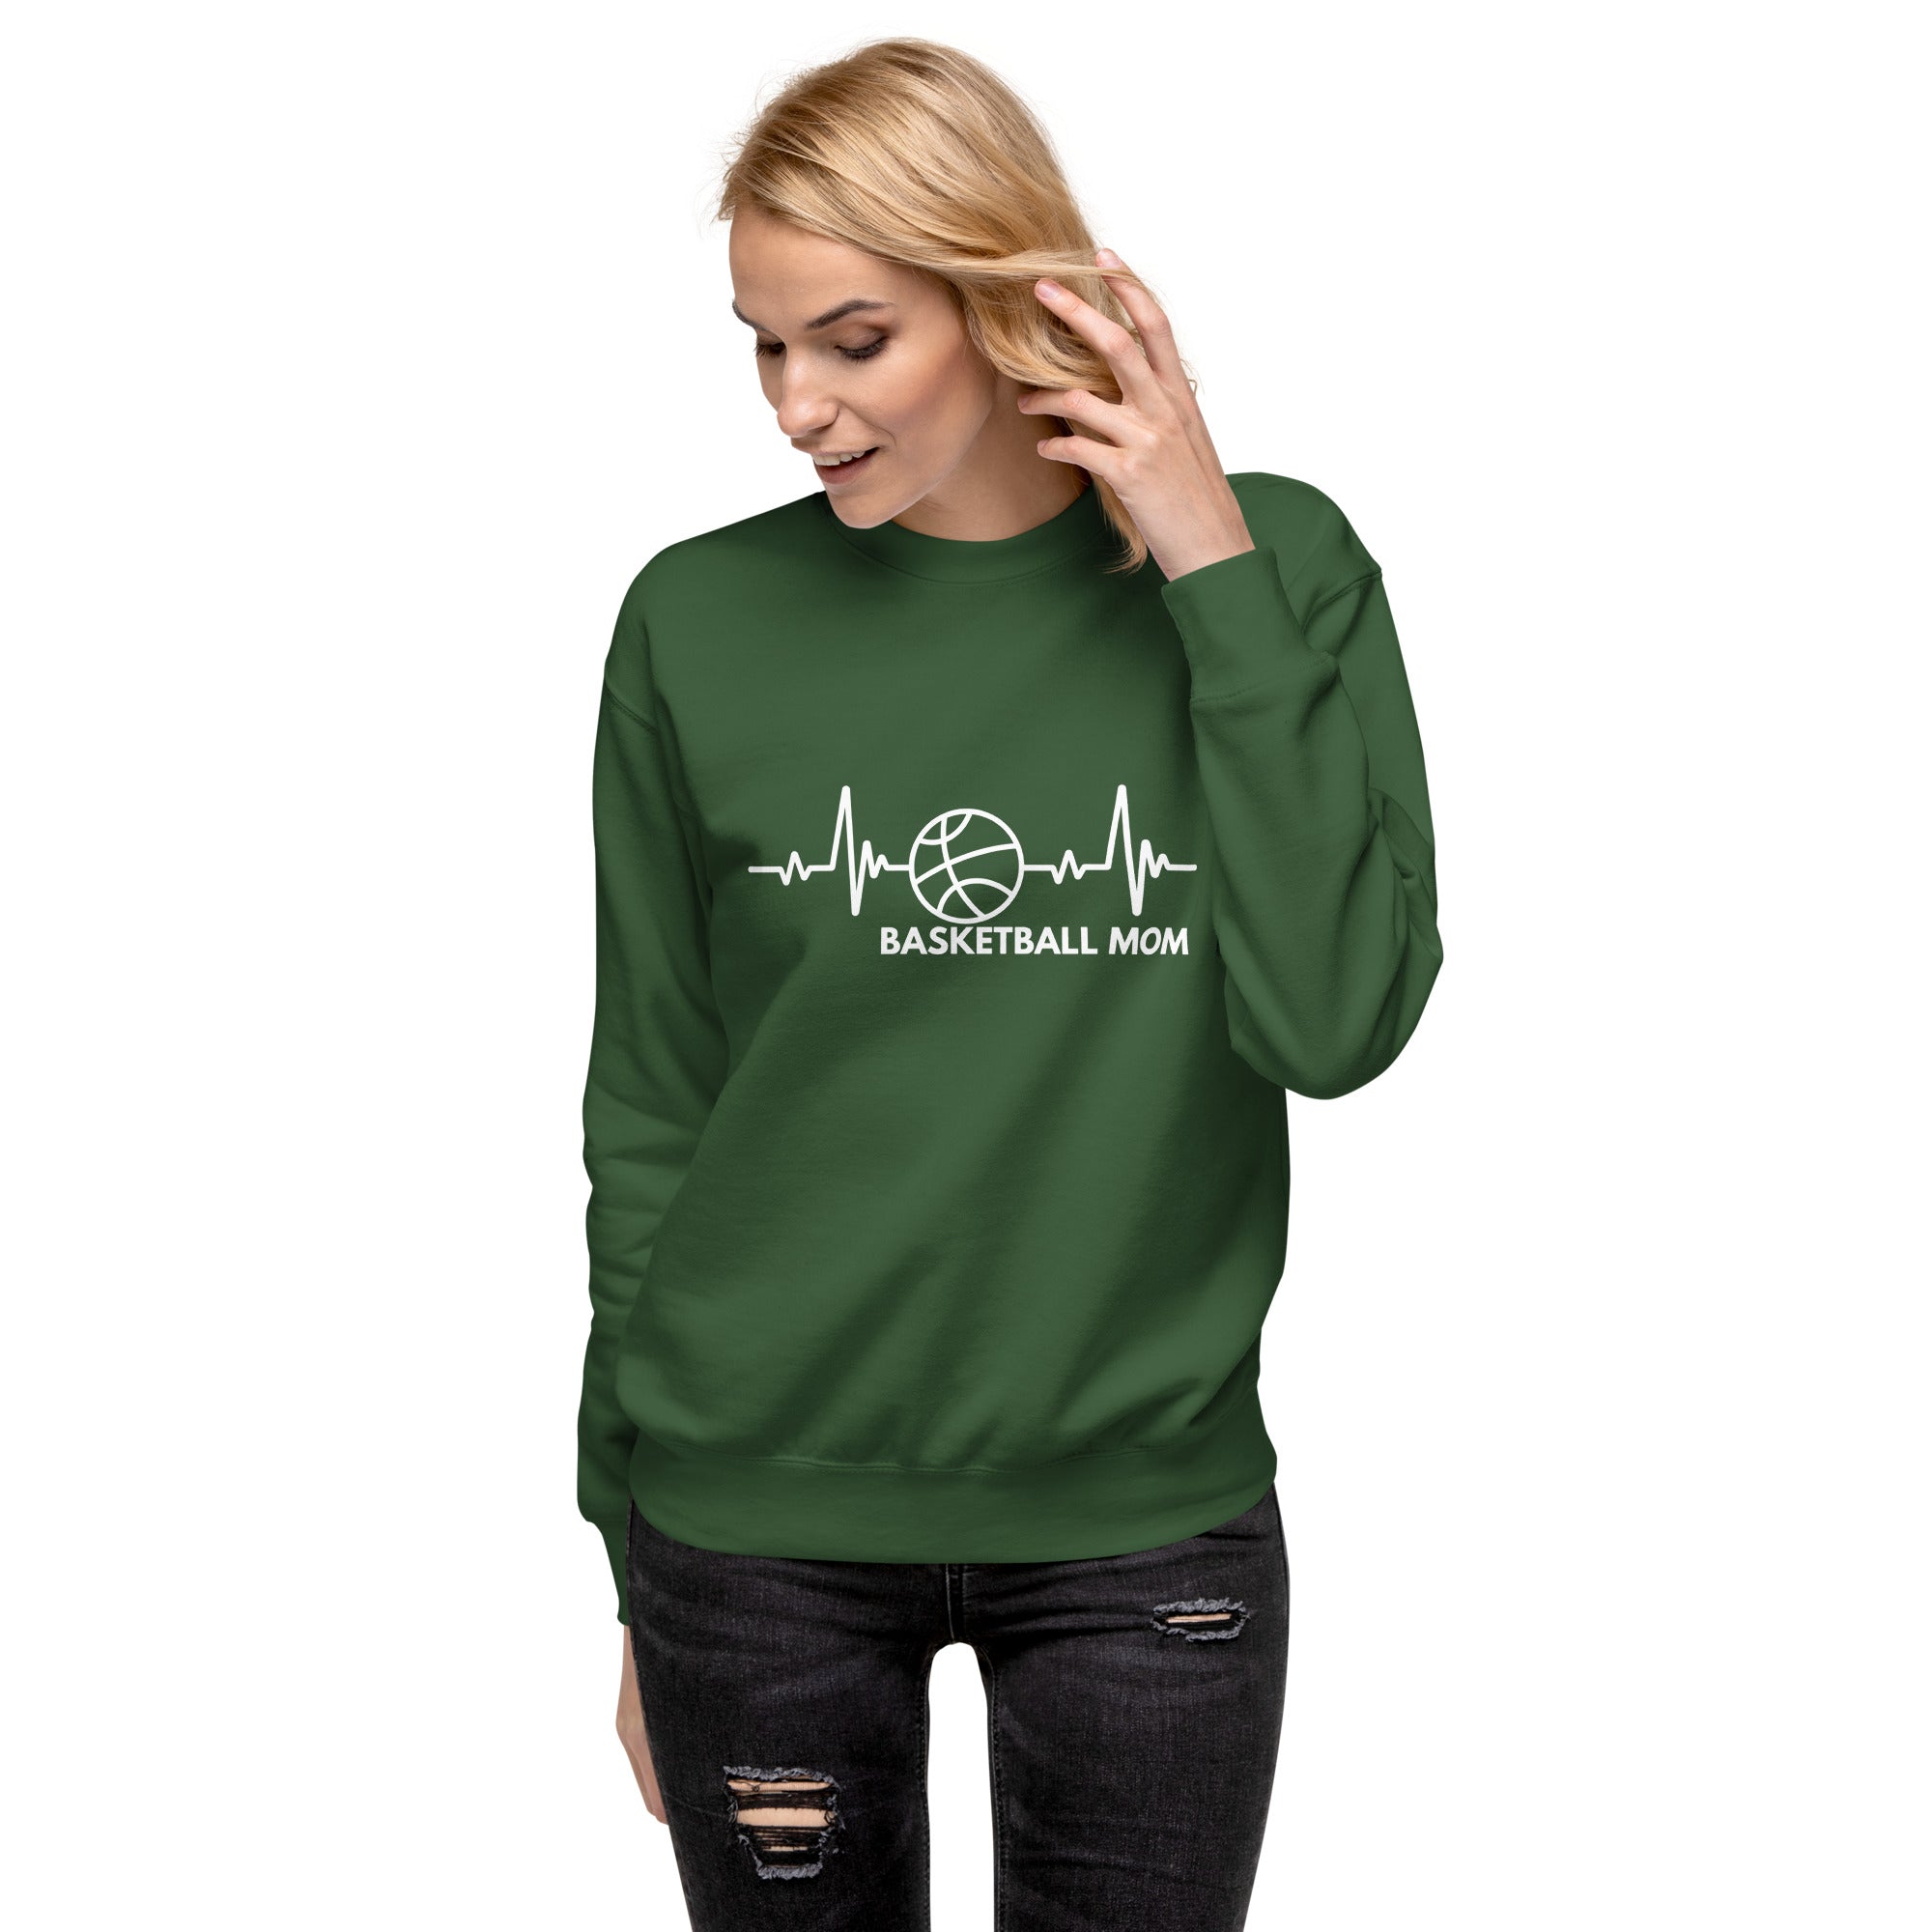 Basketball Mom Women's Premium Sweatshirt